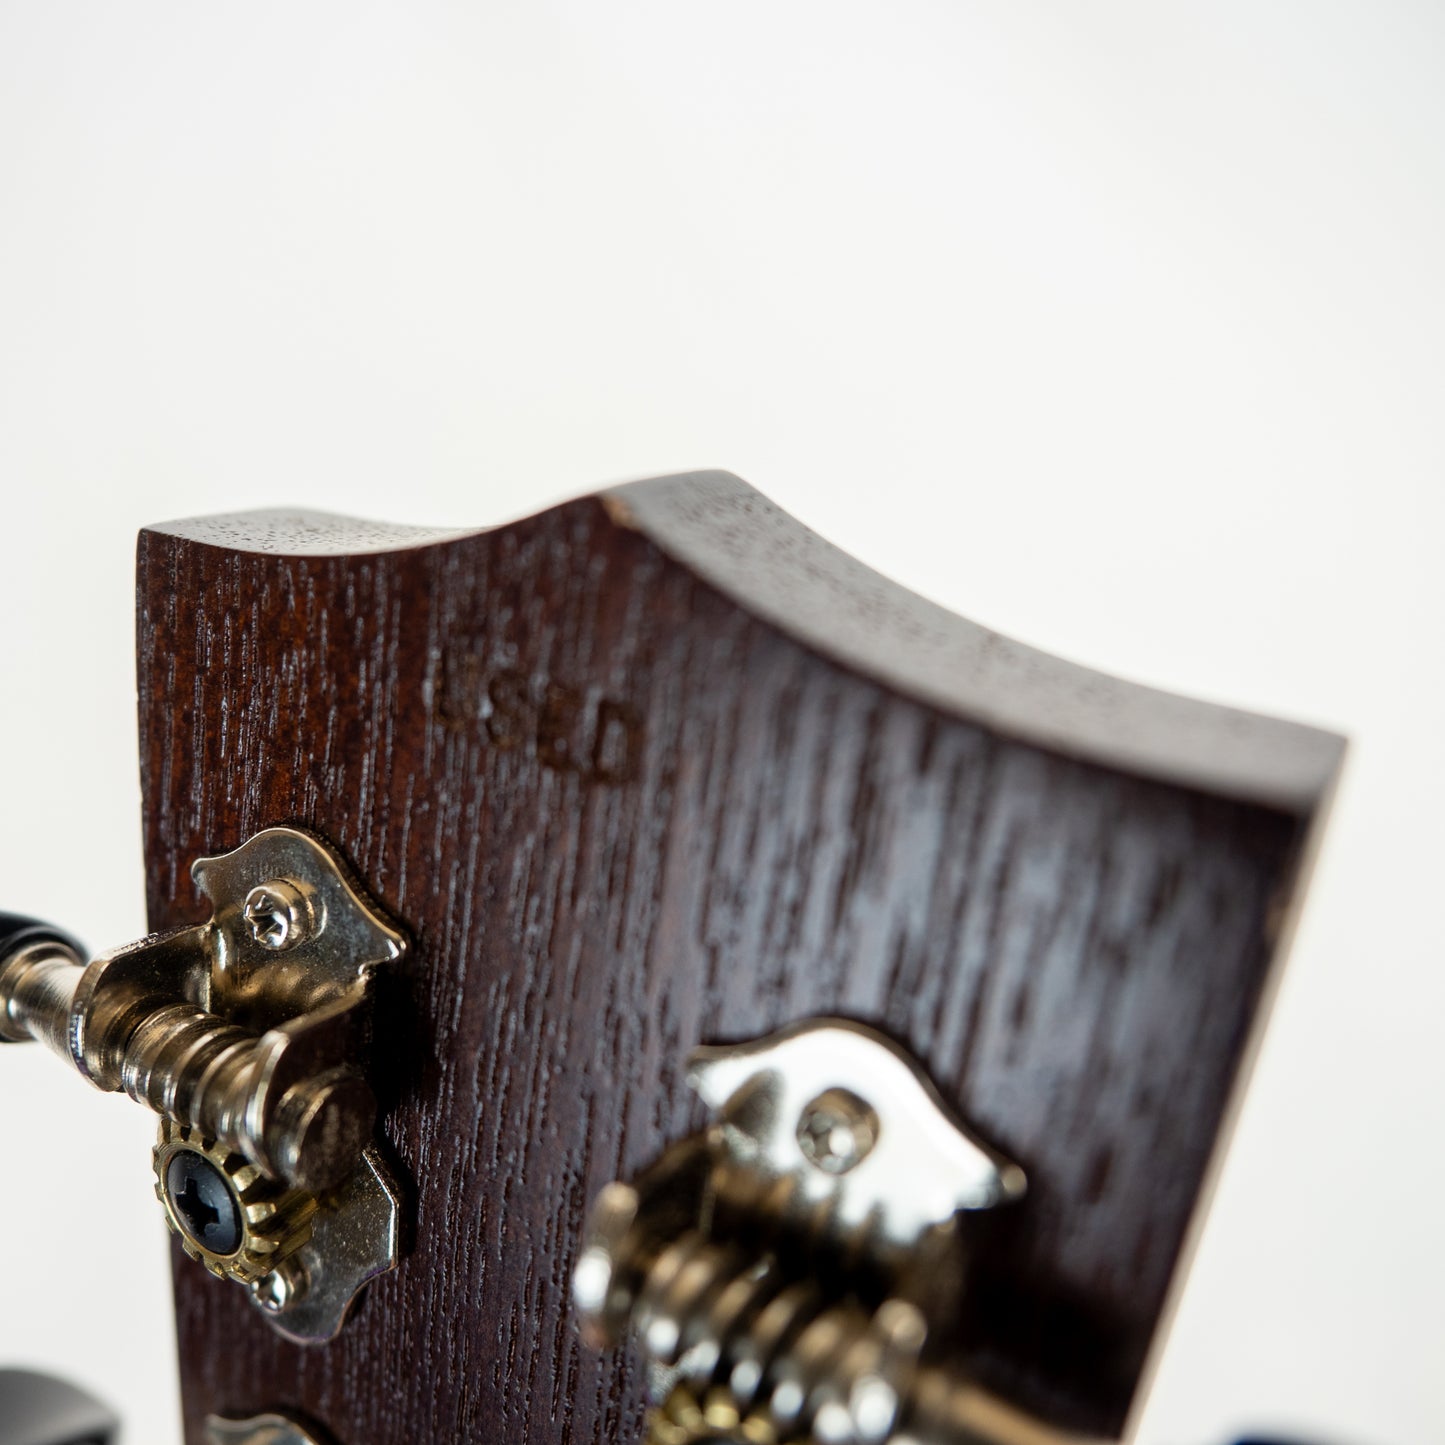 Kala satin mahogany long neck soprano ukulele, engraved rosette with Fender gigbag